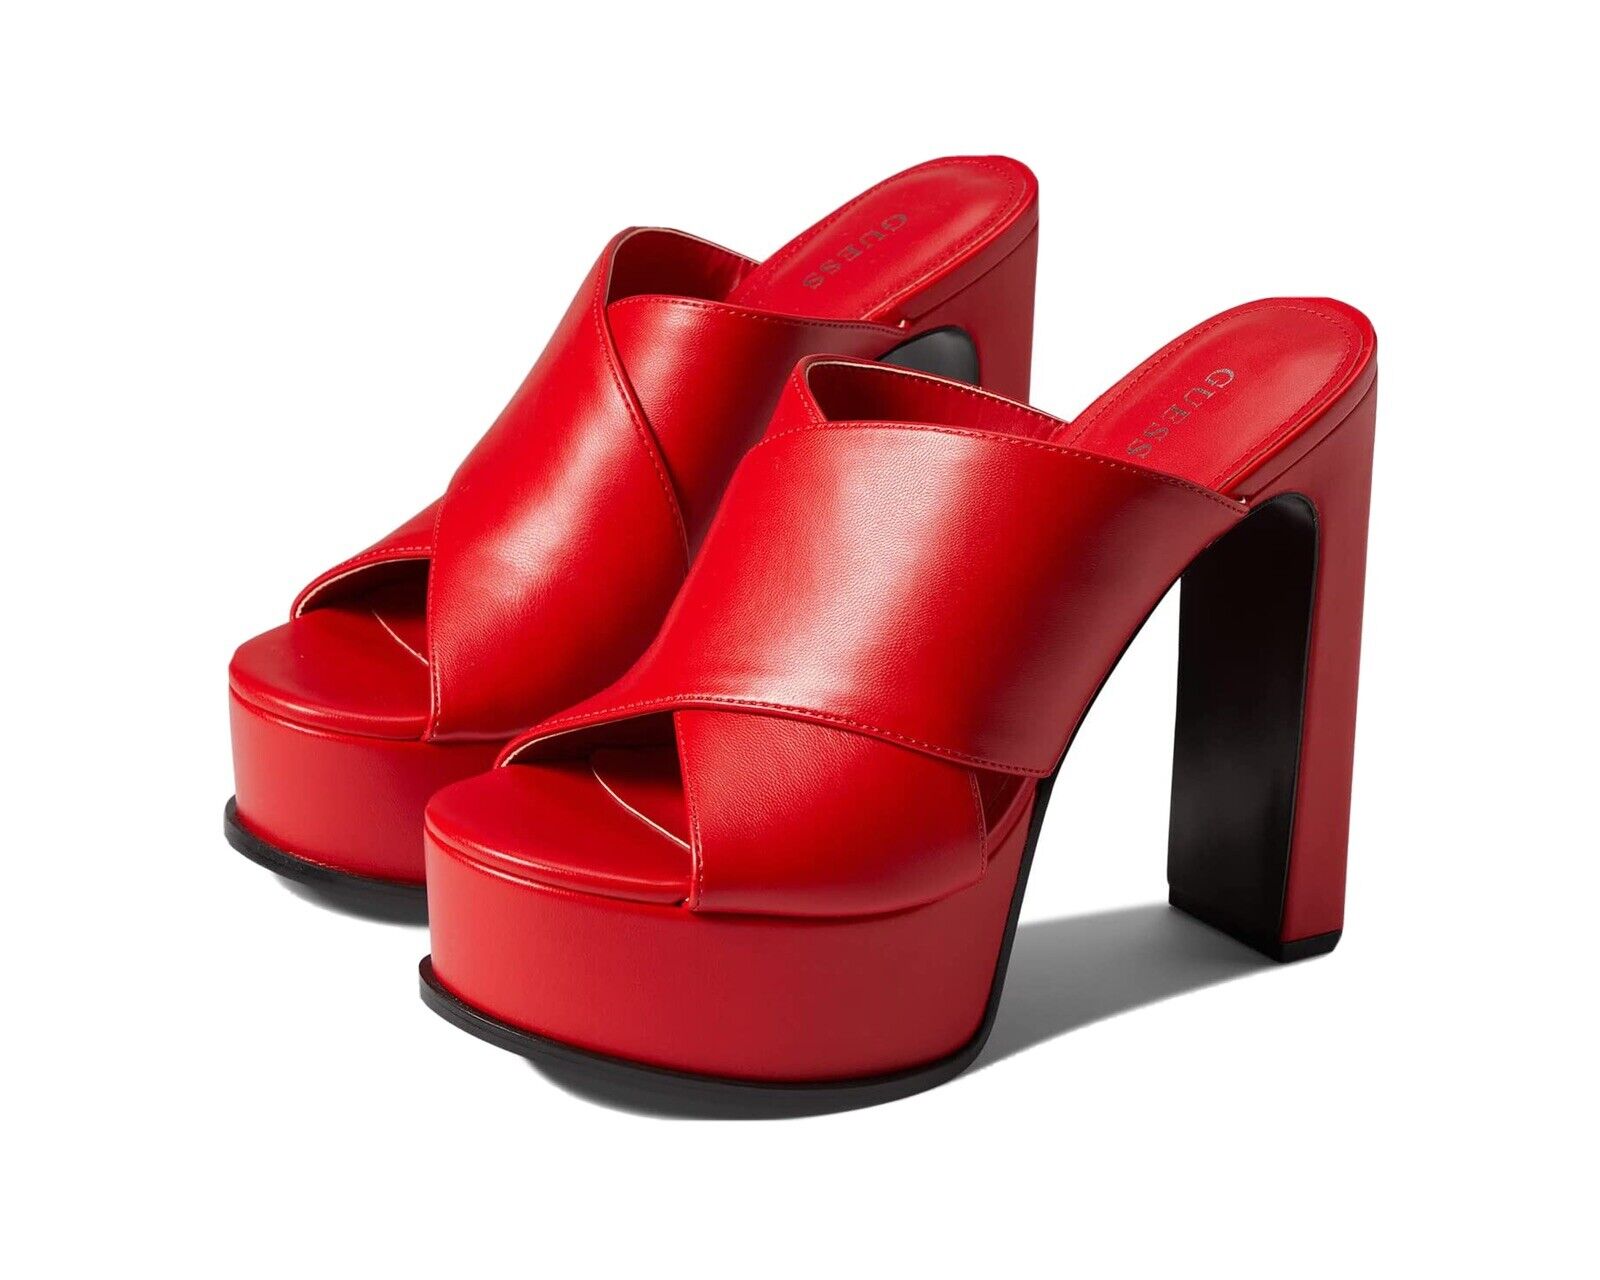 GUESS Red heels platform sandals Size | eBay